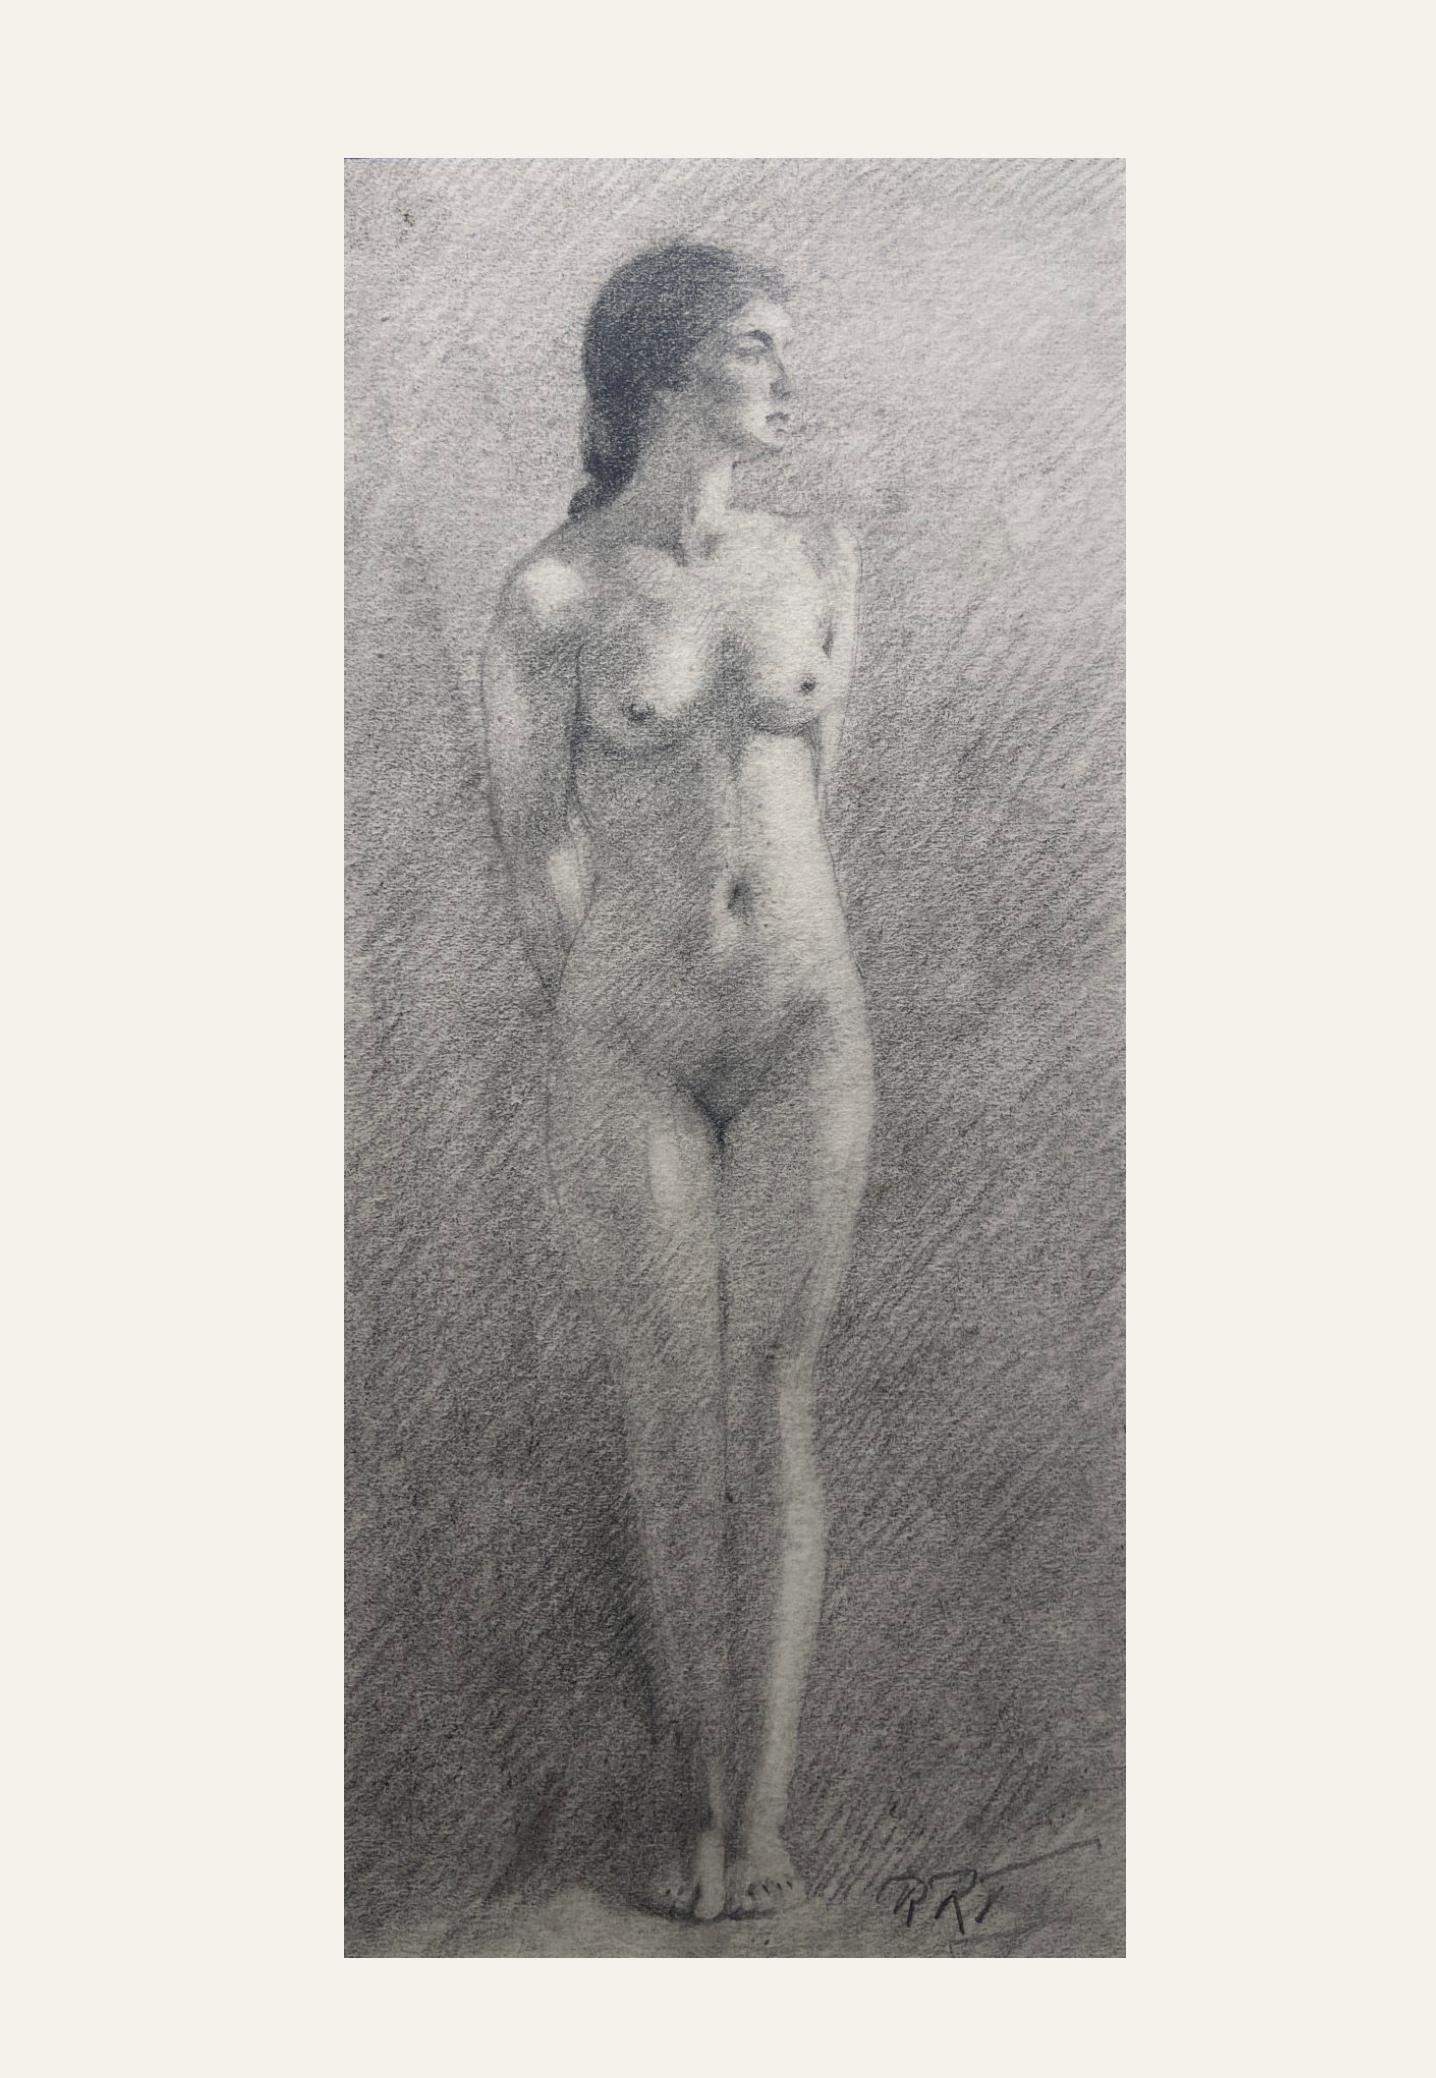 Étude de nu au graphite, 19e siècle École britannique, cadre doré - Art de R.T.T.